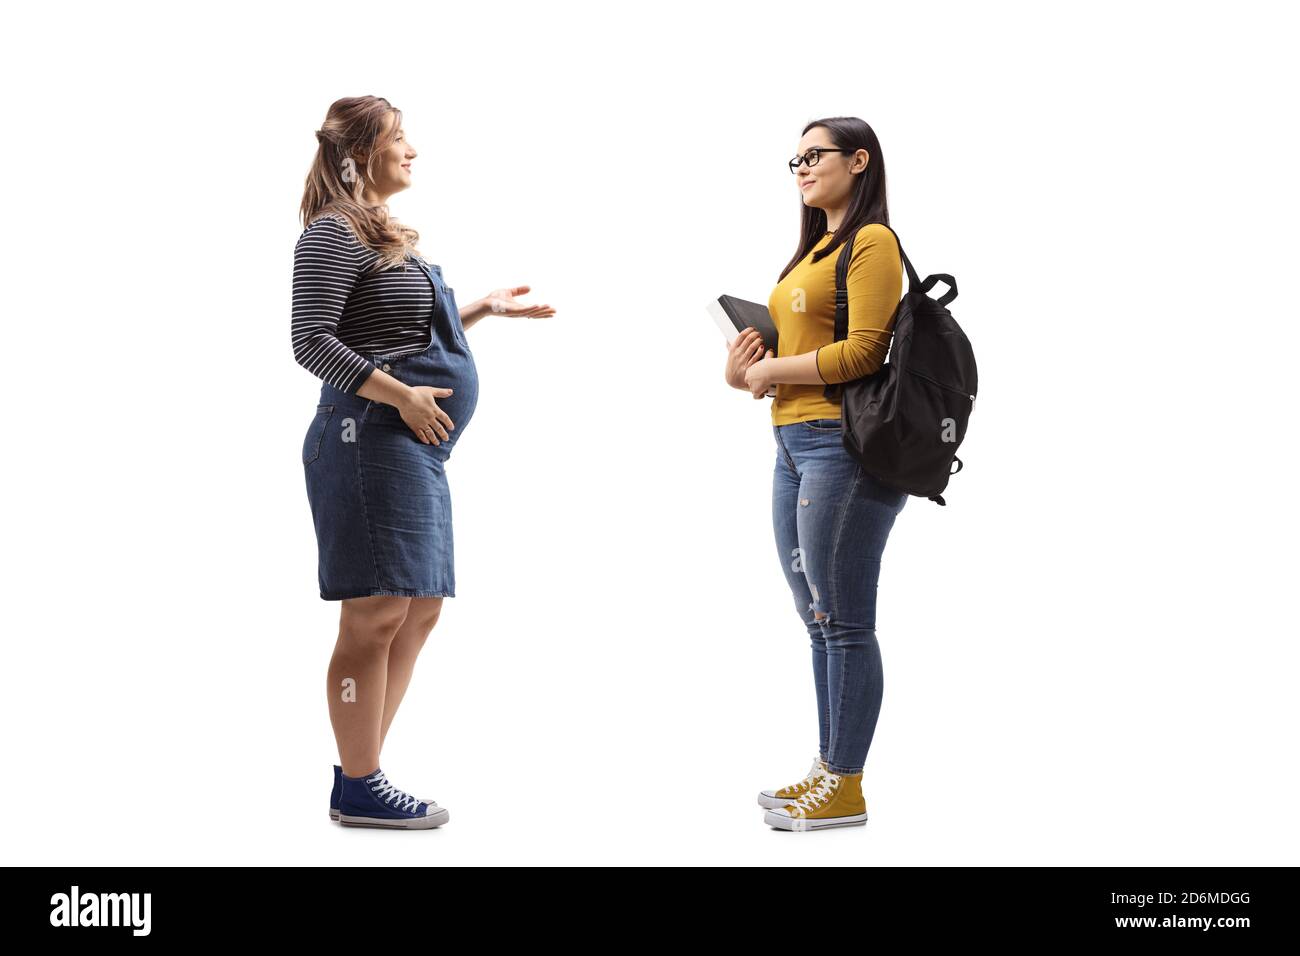 Foto di profilo a lunghezza intera di una donna incinta che parla con una studentessa isolata su sfondo bianco Foto Stock